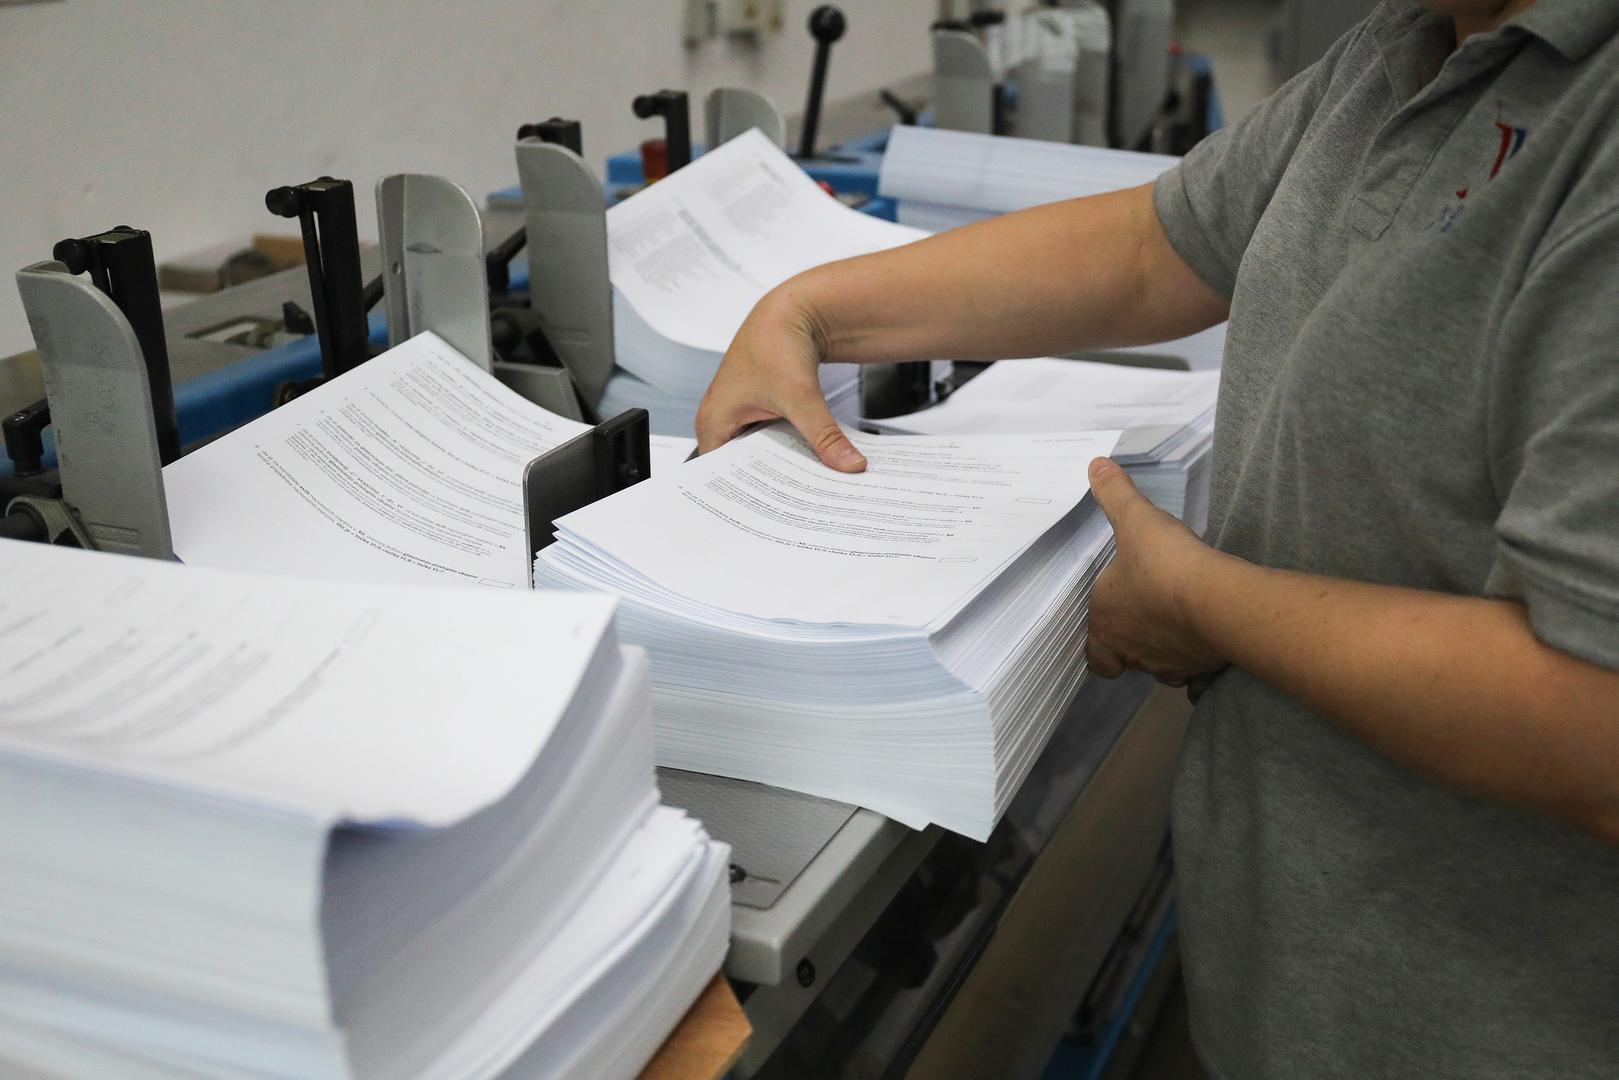 Tiskanje glasačkih listića za parlamentarne izbore, koji će se održati 17. travnja, počelo je u četvrtak u tiskari Narodnih novina.

